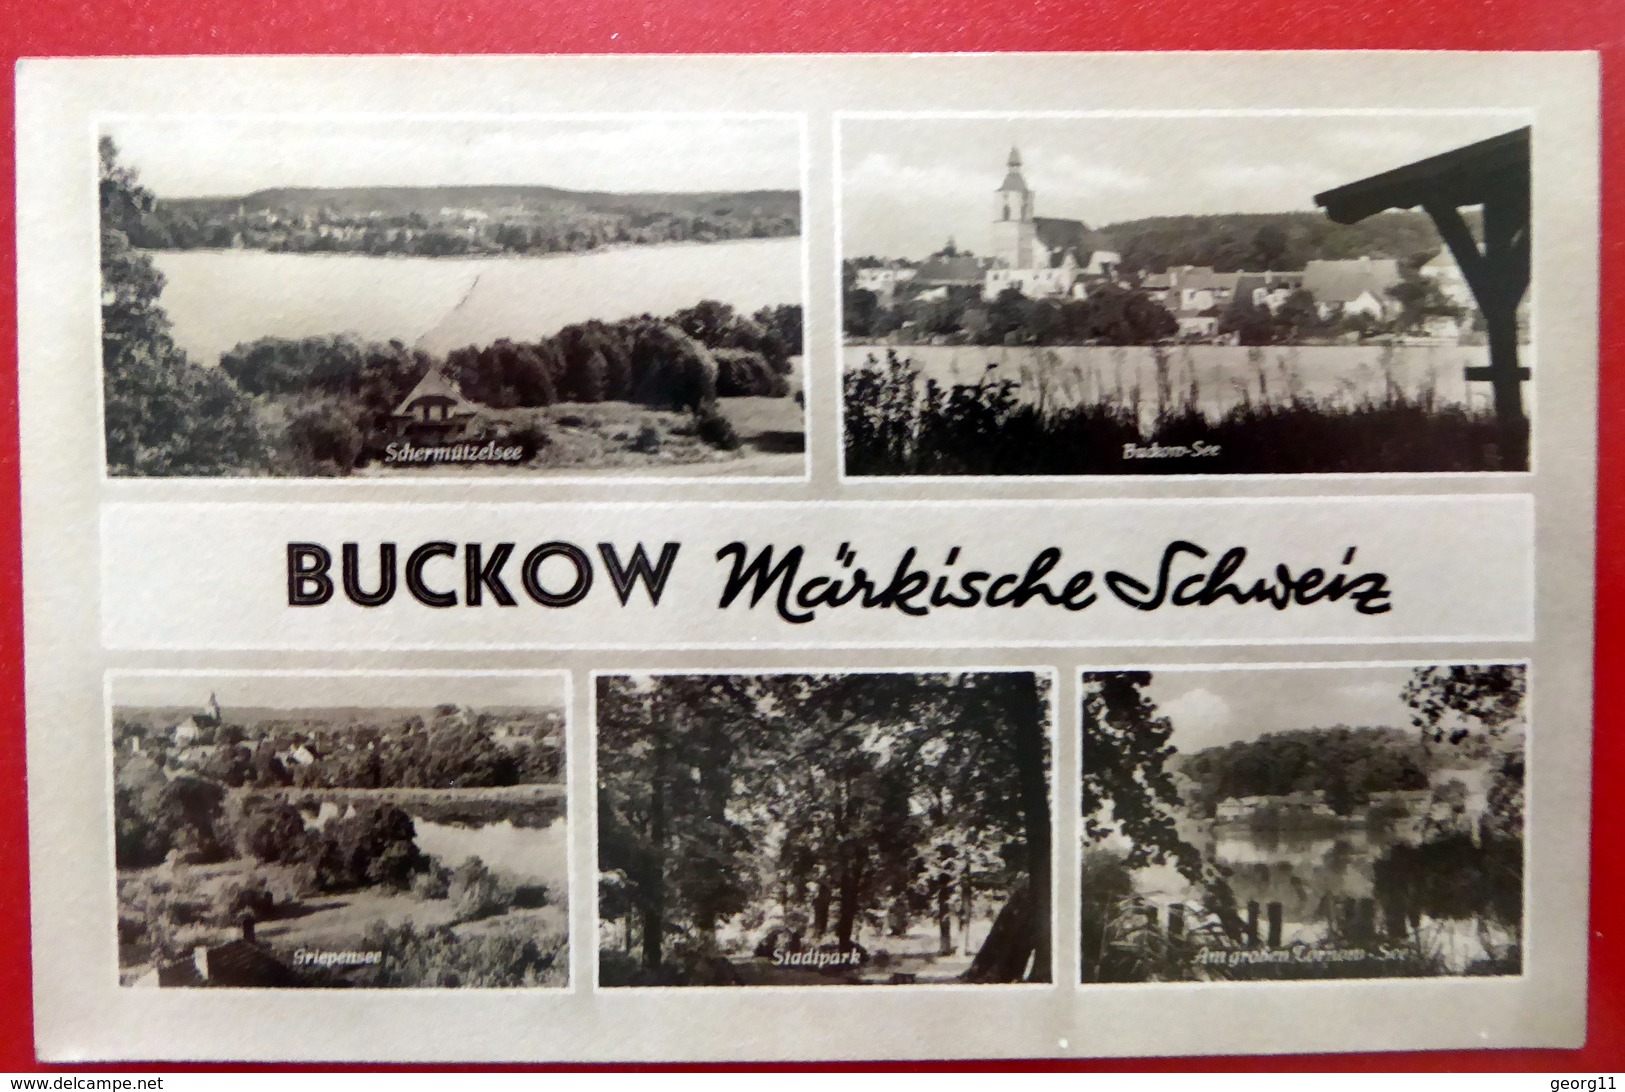 Buckow - Märkische Schweiz - Strausberg - Echtfoto - Kleinformat - DDR 1960 - MBK - Buckow